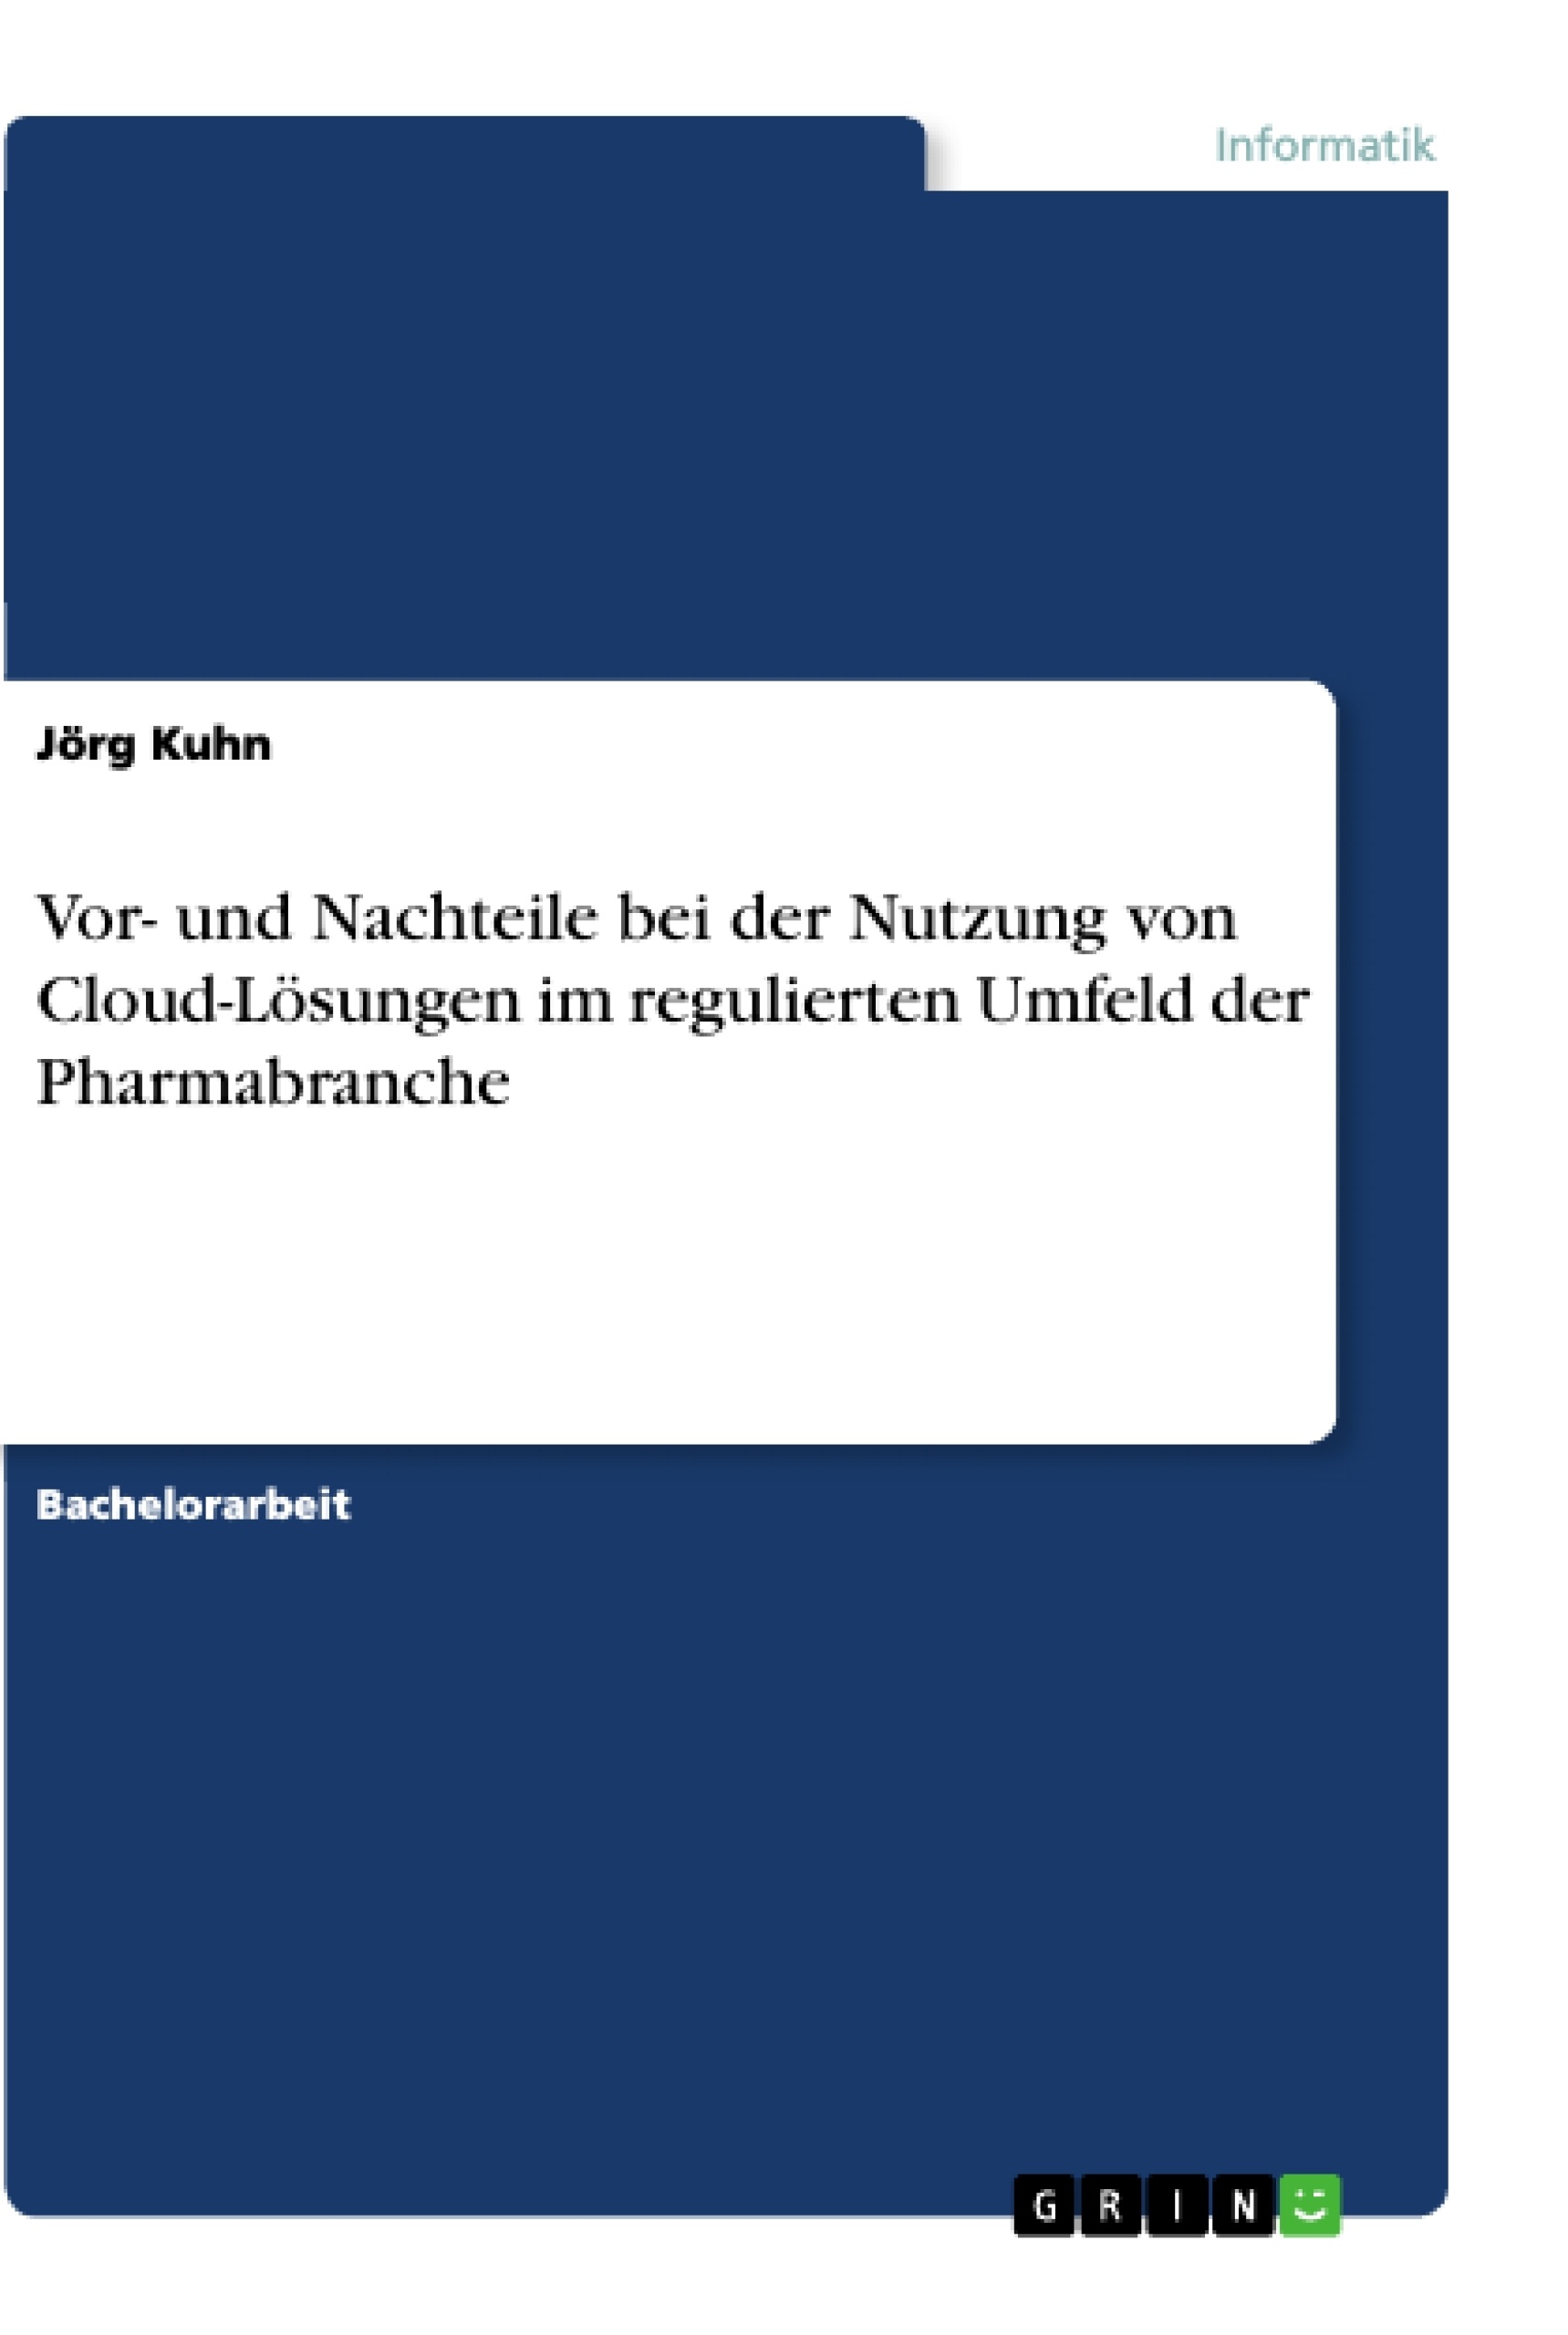 Titre: Vor- und Nachteile bei der Nutzung von Cloud-Lösungen im regulierten Umfeld der Pharmabranche